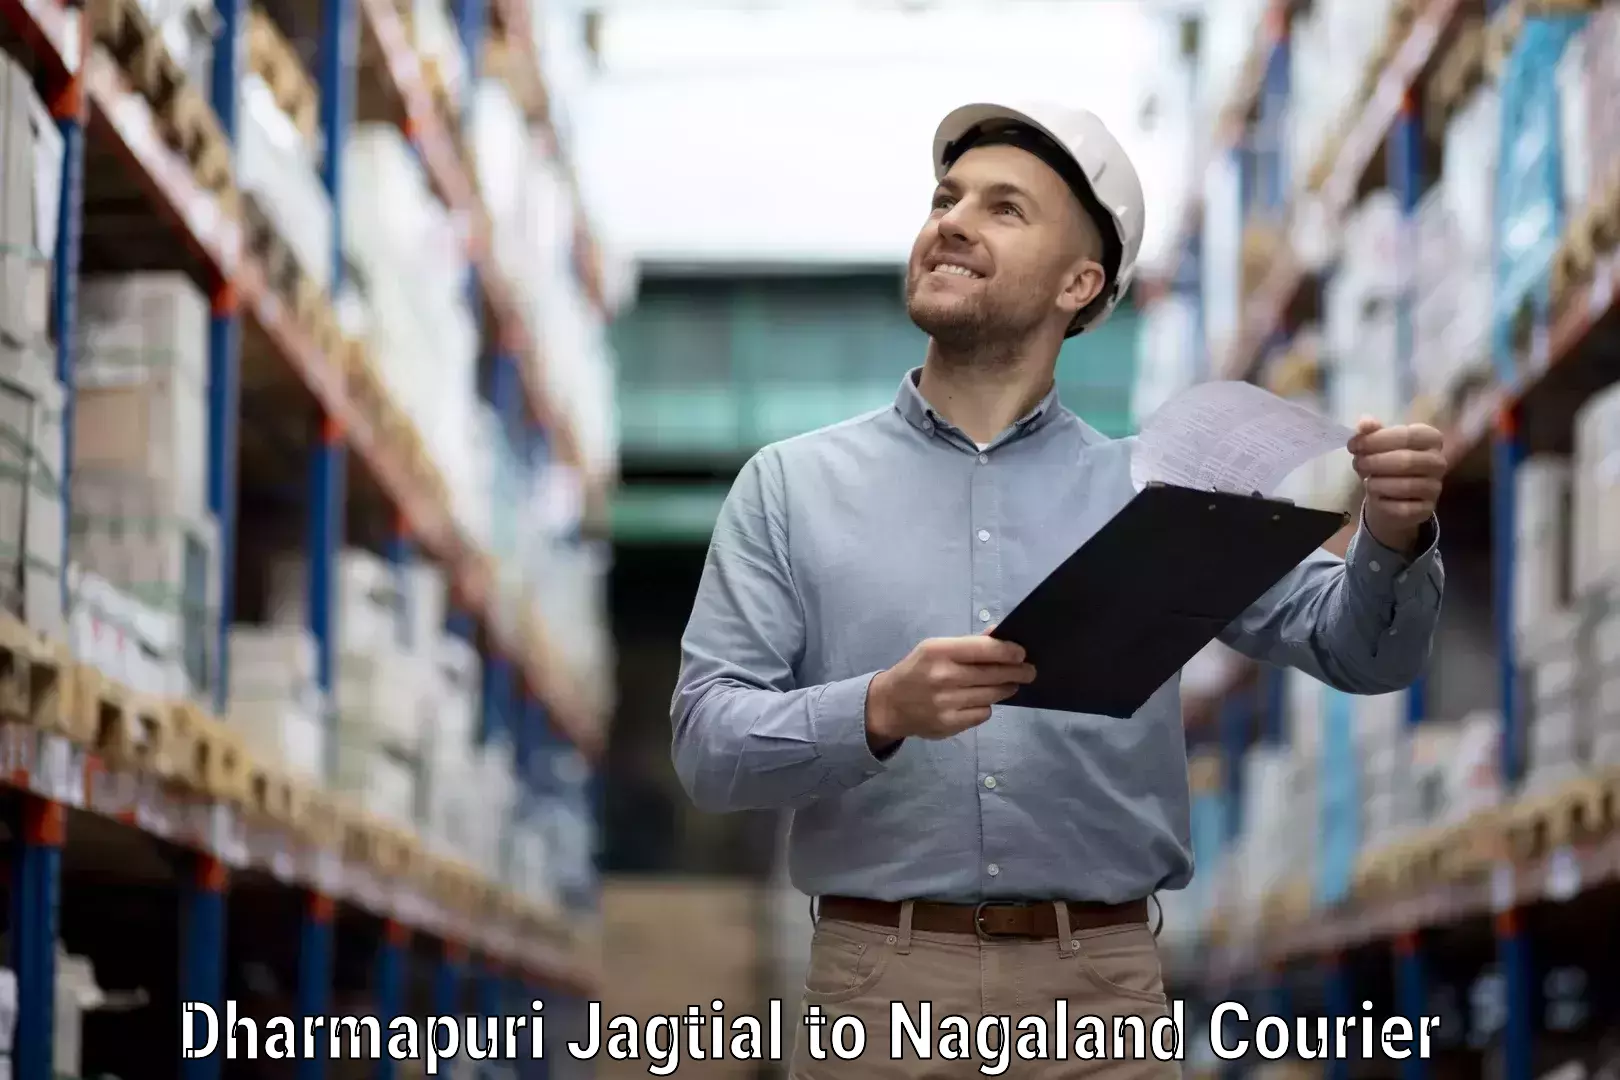 Customer-focused courier in Dharmapuri Jagtial to NIT Nagaland